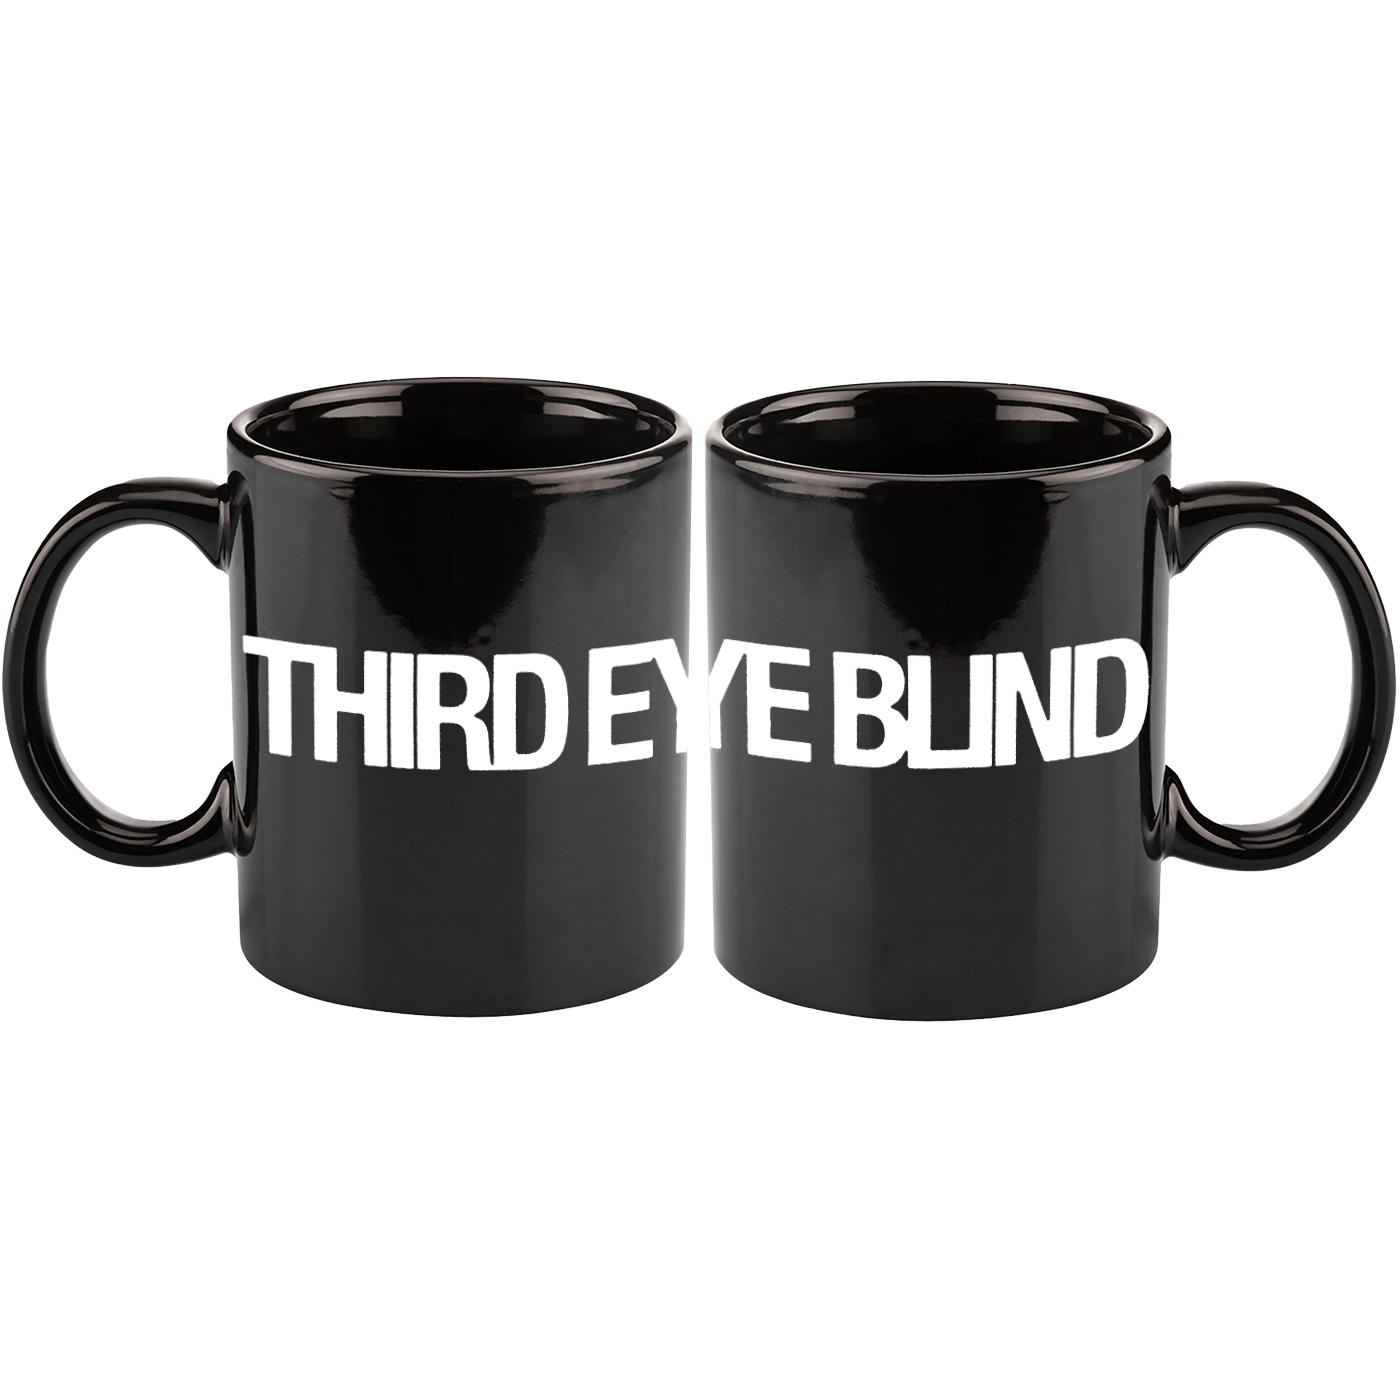 Third Eye Blind Mug